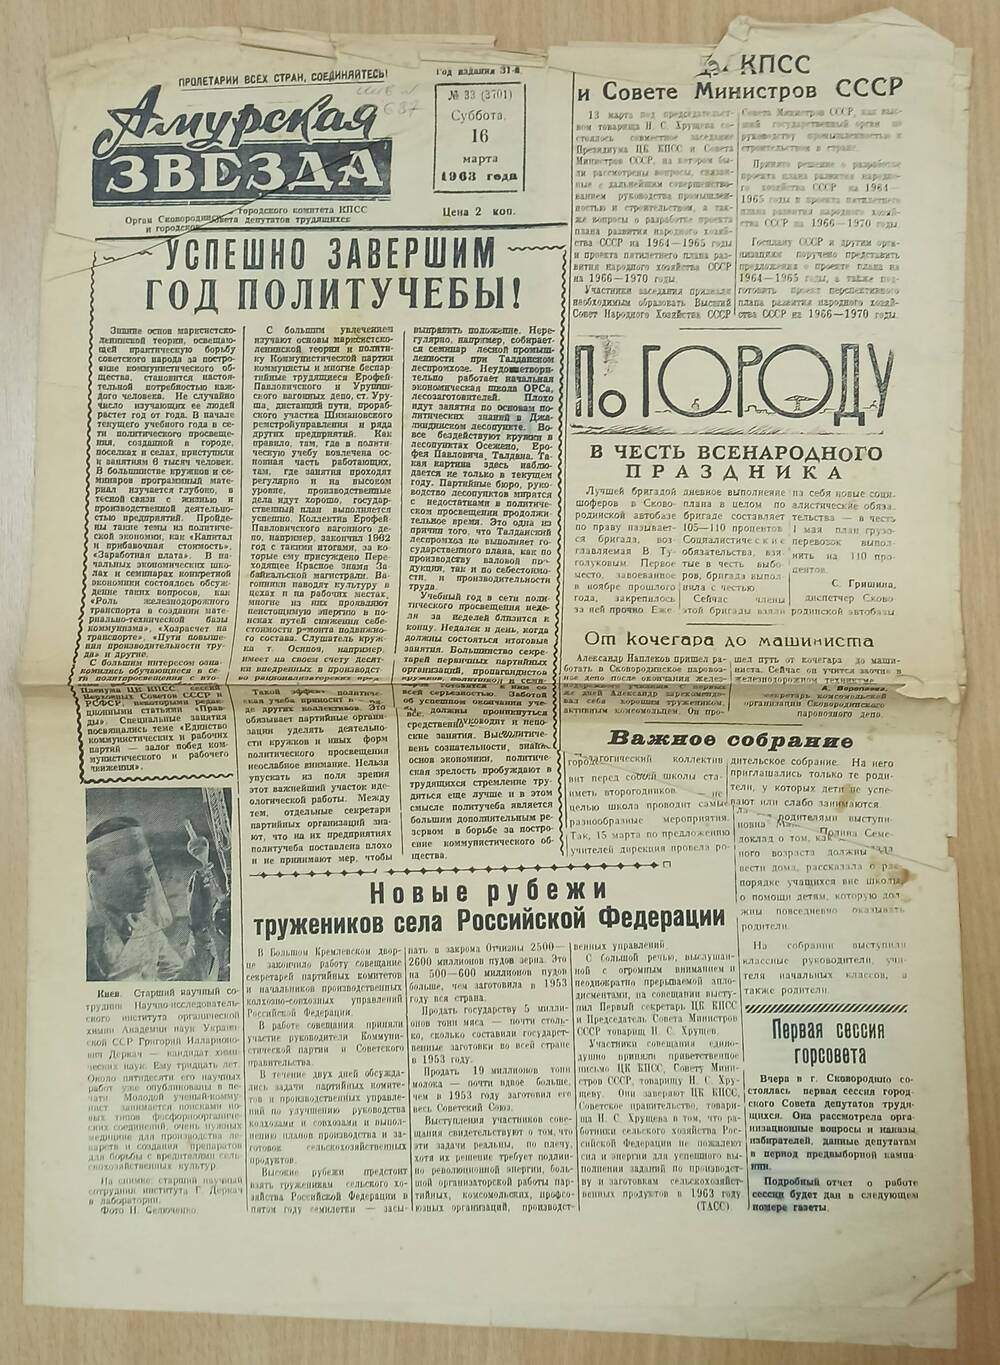 Газета Амурская звезда №33 от 16.03.1963 года. С продолжением  статьи В.М. Турчина.